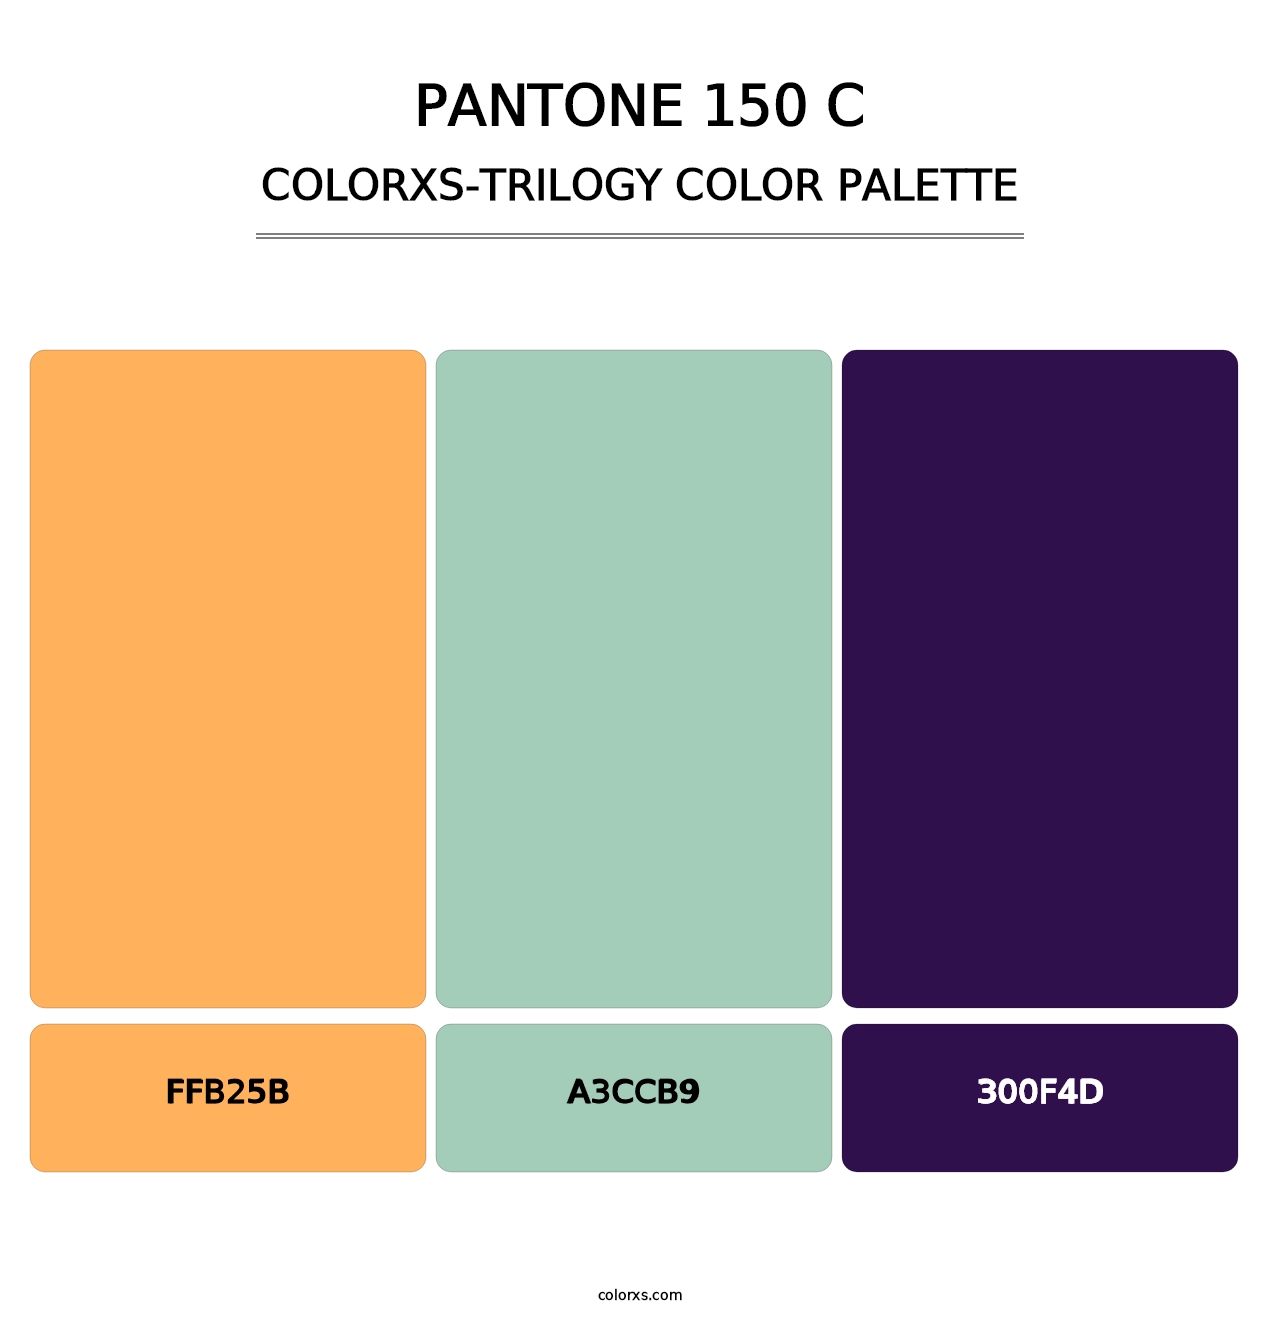 PANTONE 150 C - Colorxs Trilogy Palette